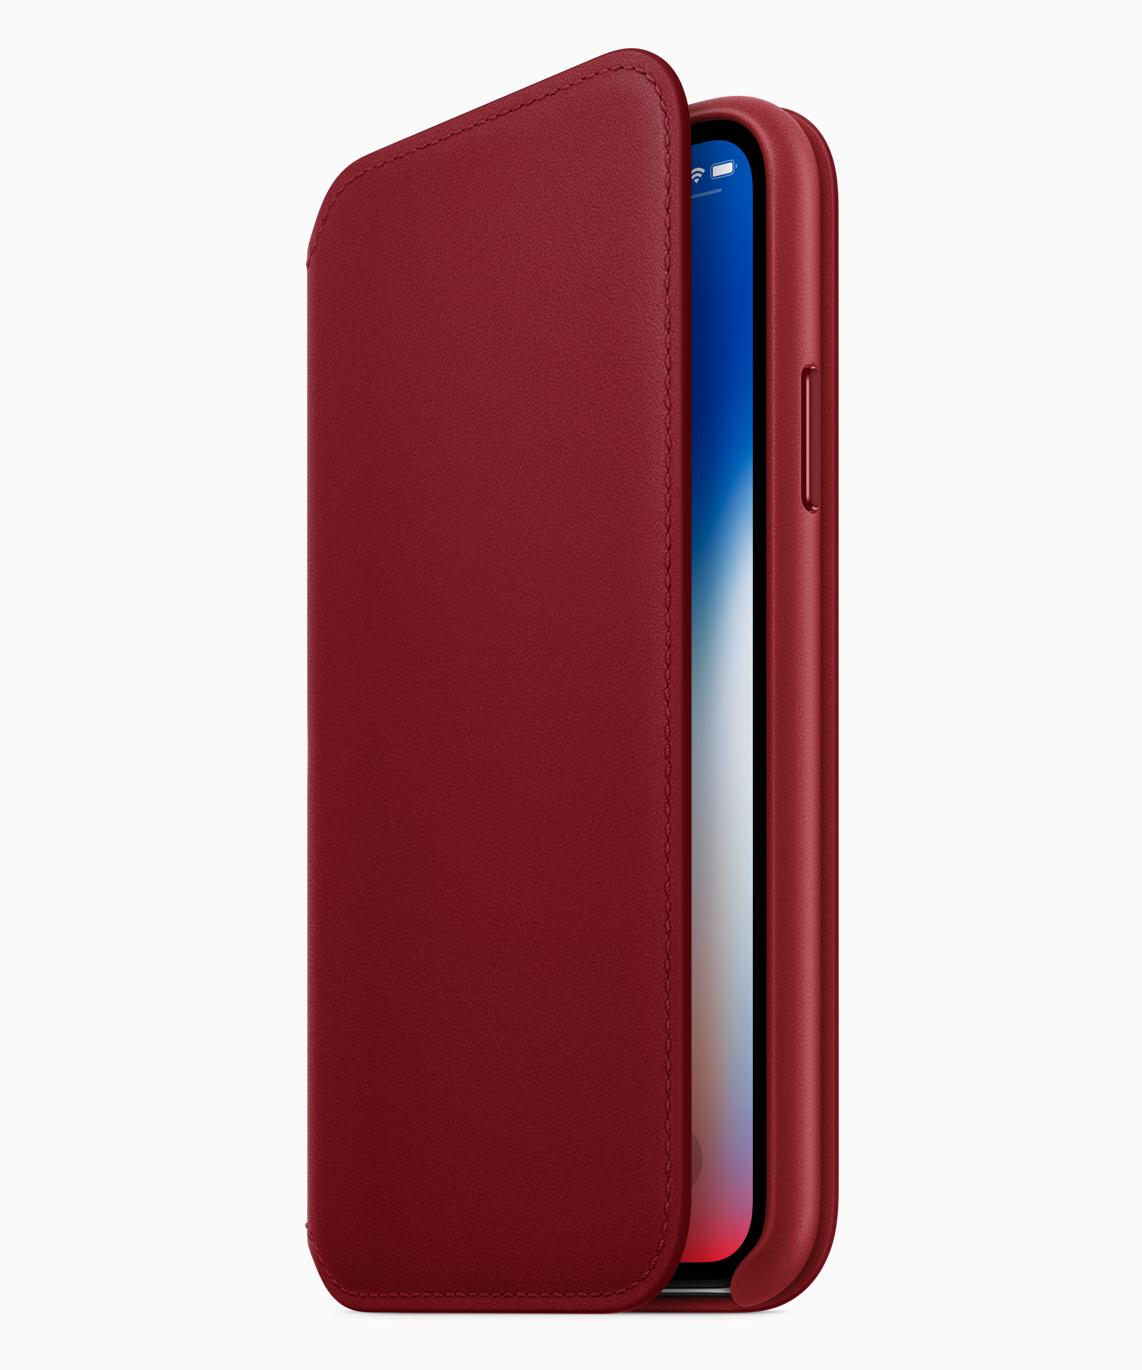 赤いiPhone登場。iPhone 8/8 Plus (PRODUCT) RED Special Edition